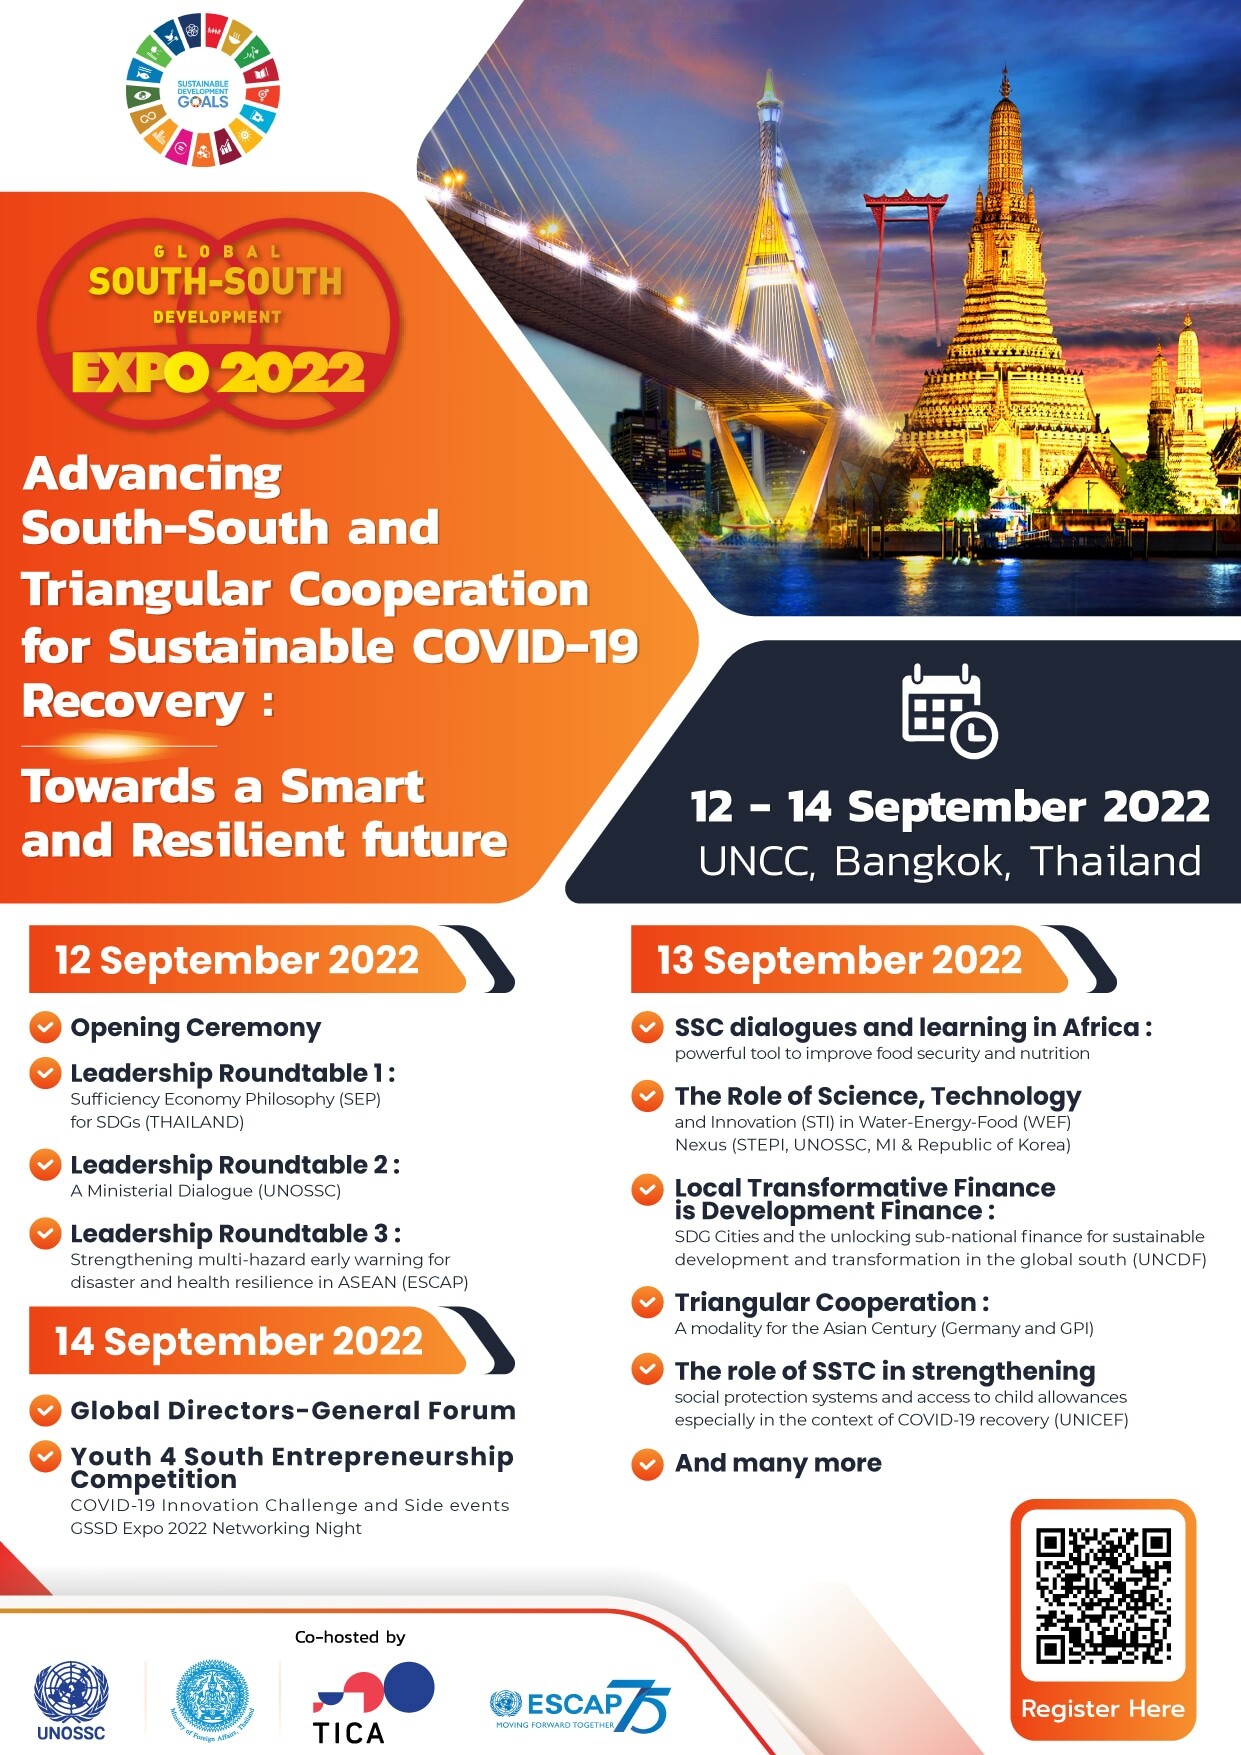 เตรียมพบกับงาน GSSD Expo 2022 เวทีแลกเปลี่ยนองค์ความรู้และแนวปฏิบัติด้านความร่วมมือเพื่อการพัฒนาระหว่างประเทศ 12 - 14 กันยายน 2565